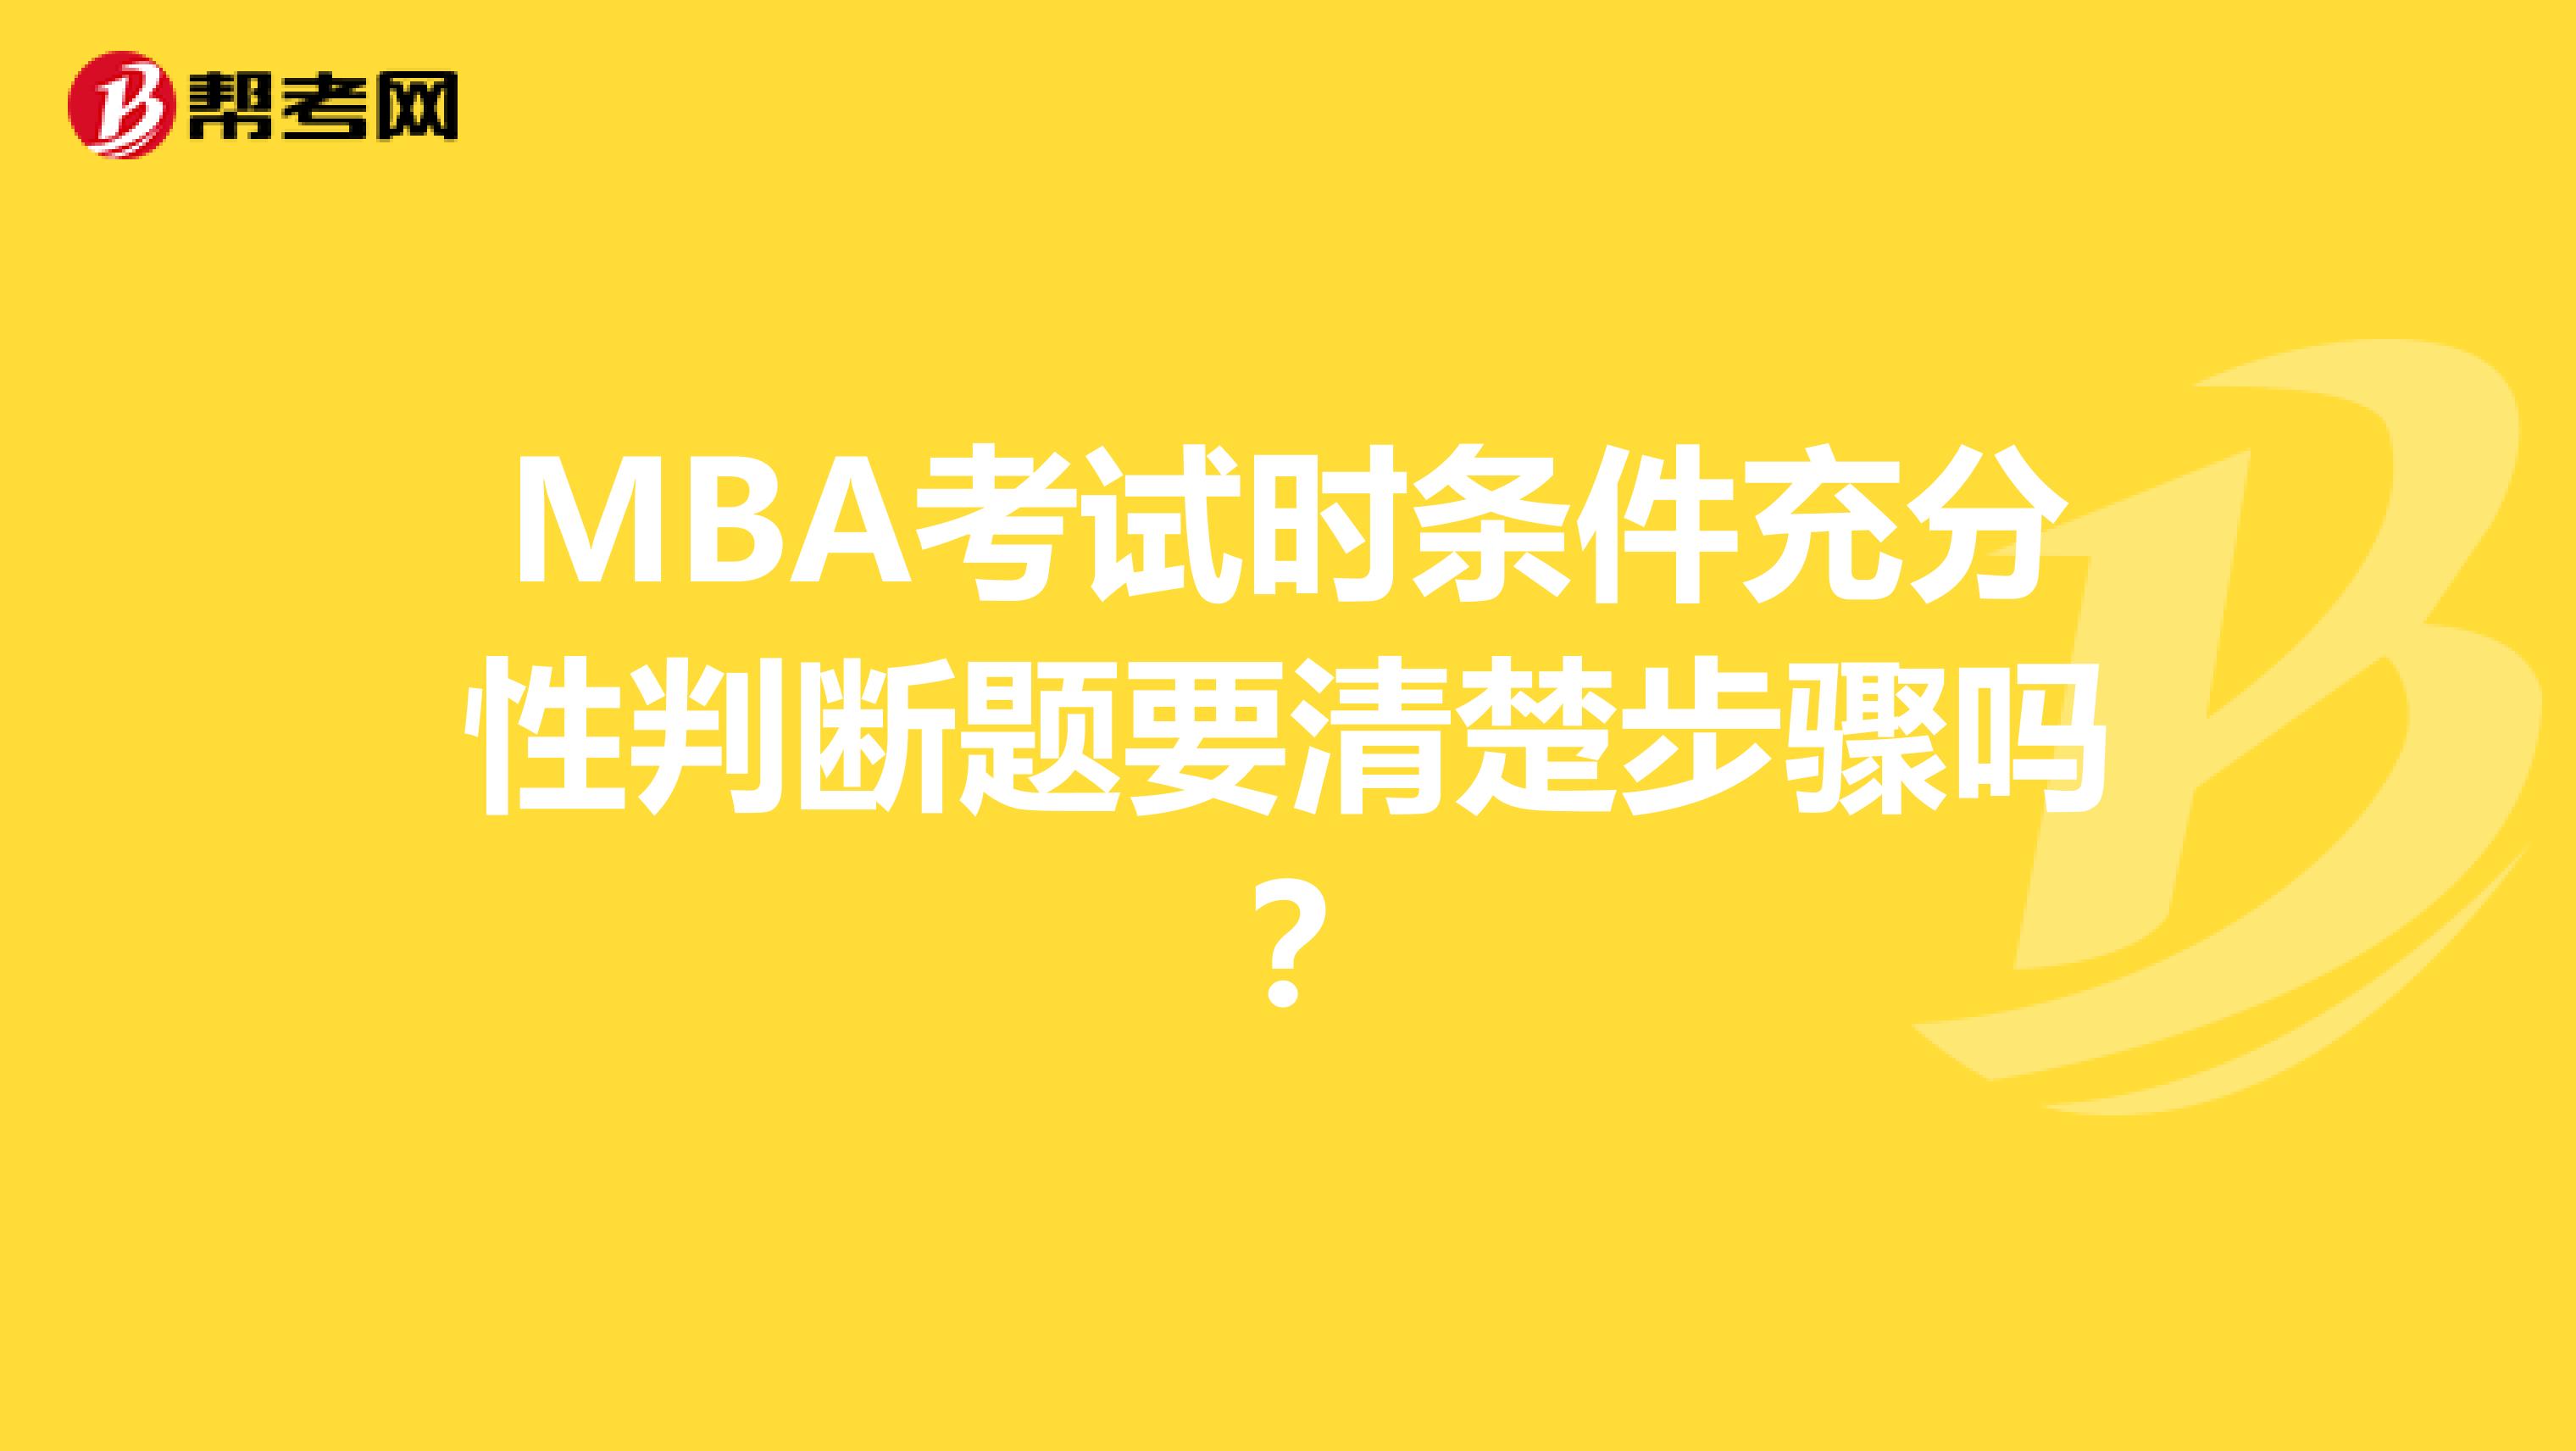 MBA考试时条件充分性判断题要清楚步骤吗？